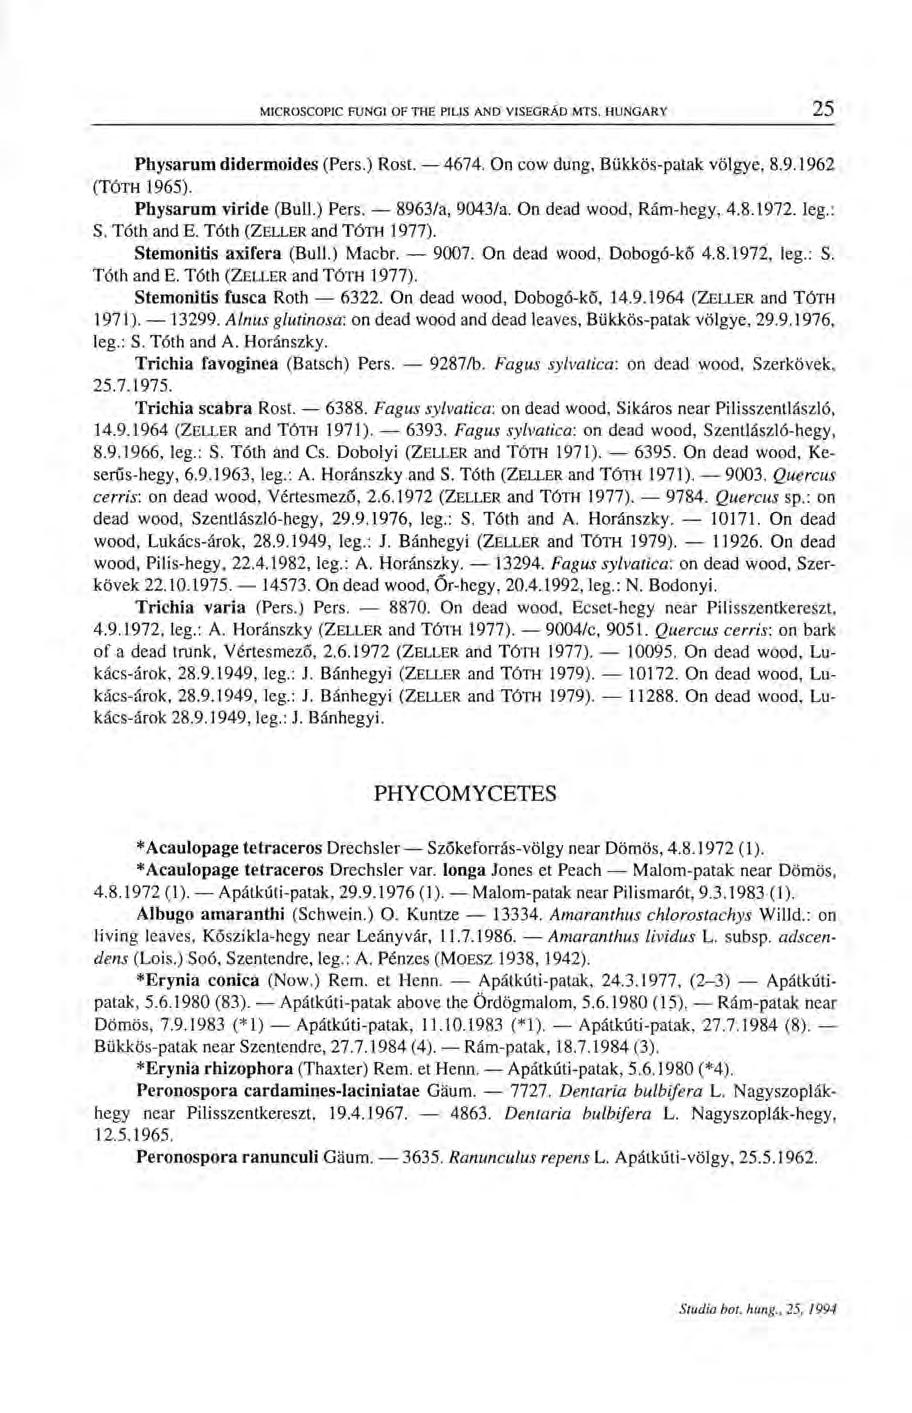 Physarum didermoides (Pers.) Rost. 4674. On cow dung, Bükkös-patak völgye, 8.9.1962 (TÓTH 1965). Physarum viride (Bull.) Pers. 8963/a, 9043/a. On dead wood, Rám-hegy, 4.8.1972. leg.: S. Tóth and E.